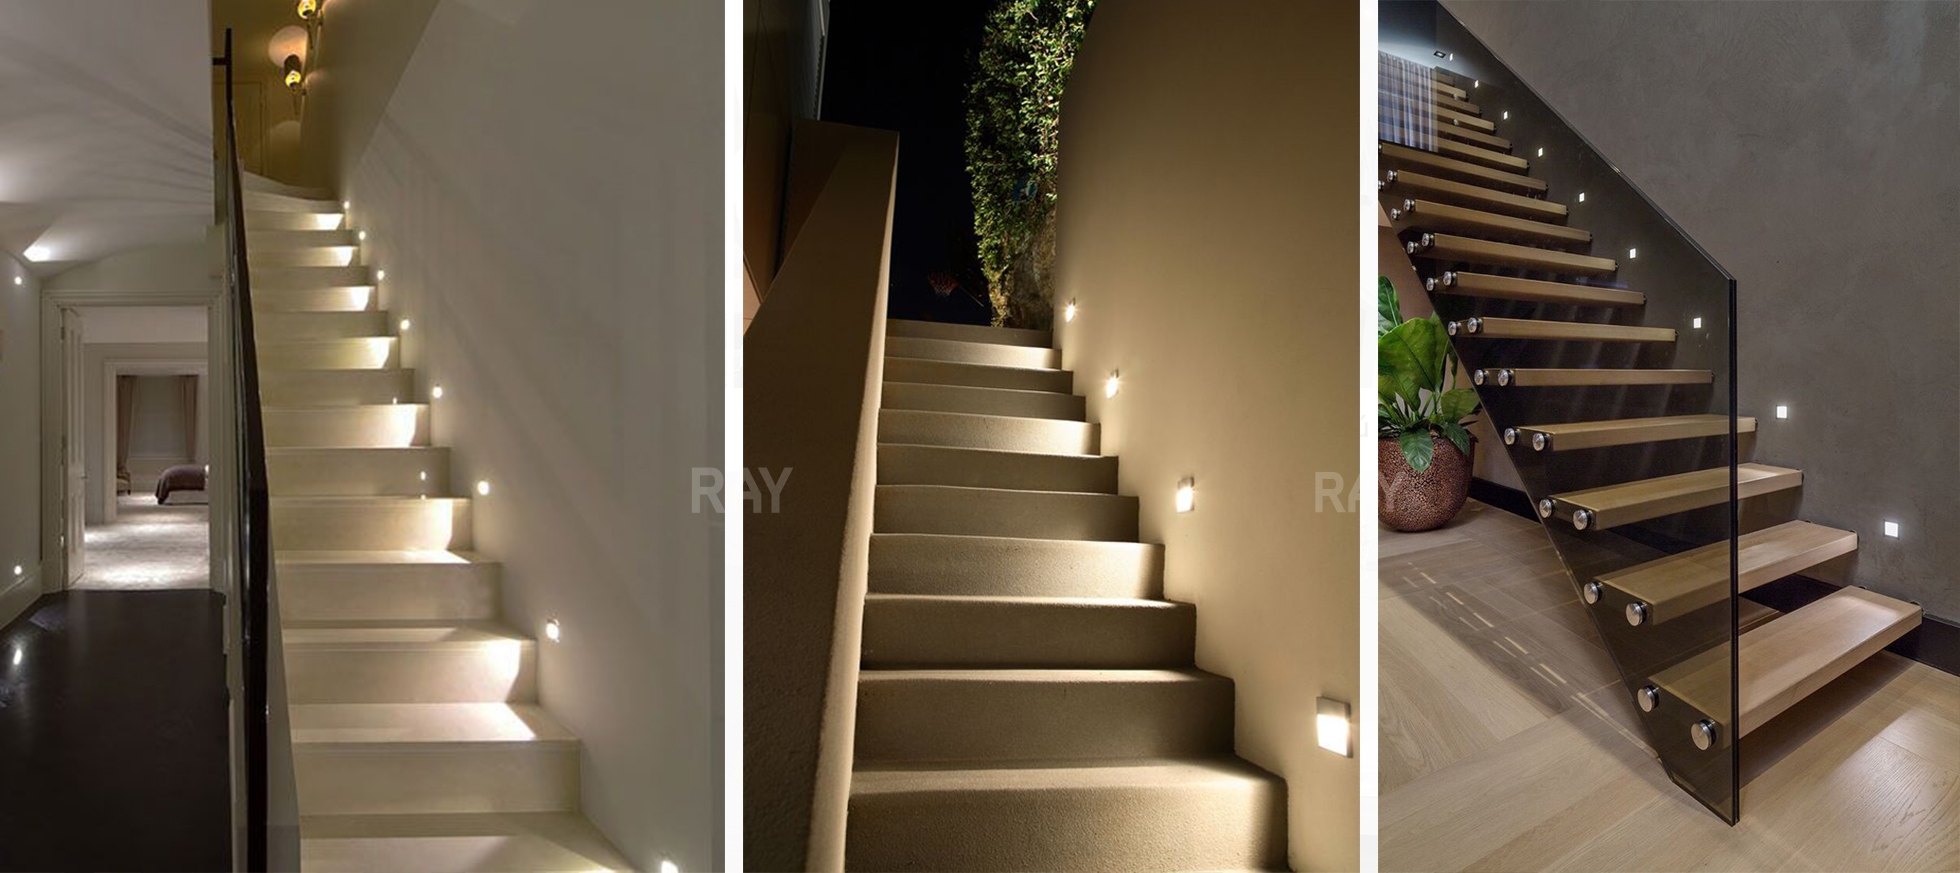 đèn âm bậc cầu thang giải pháp chiếu sáng hoàn hảo cho biệt thự, khách sạn